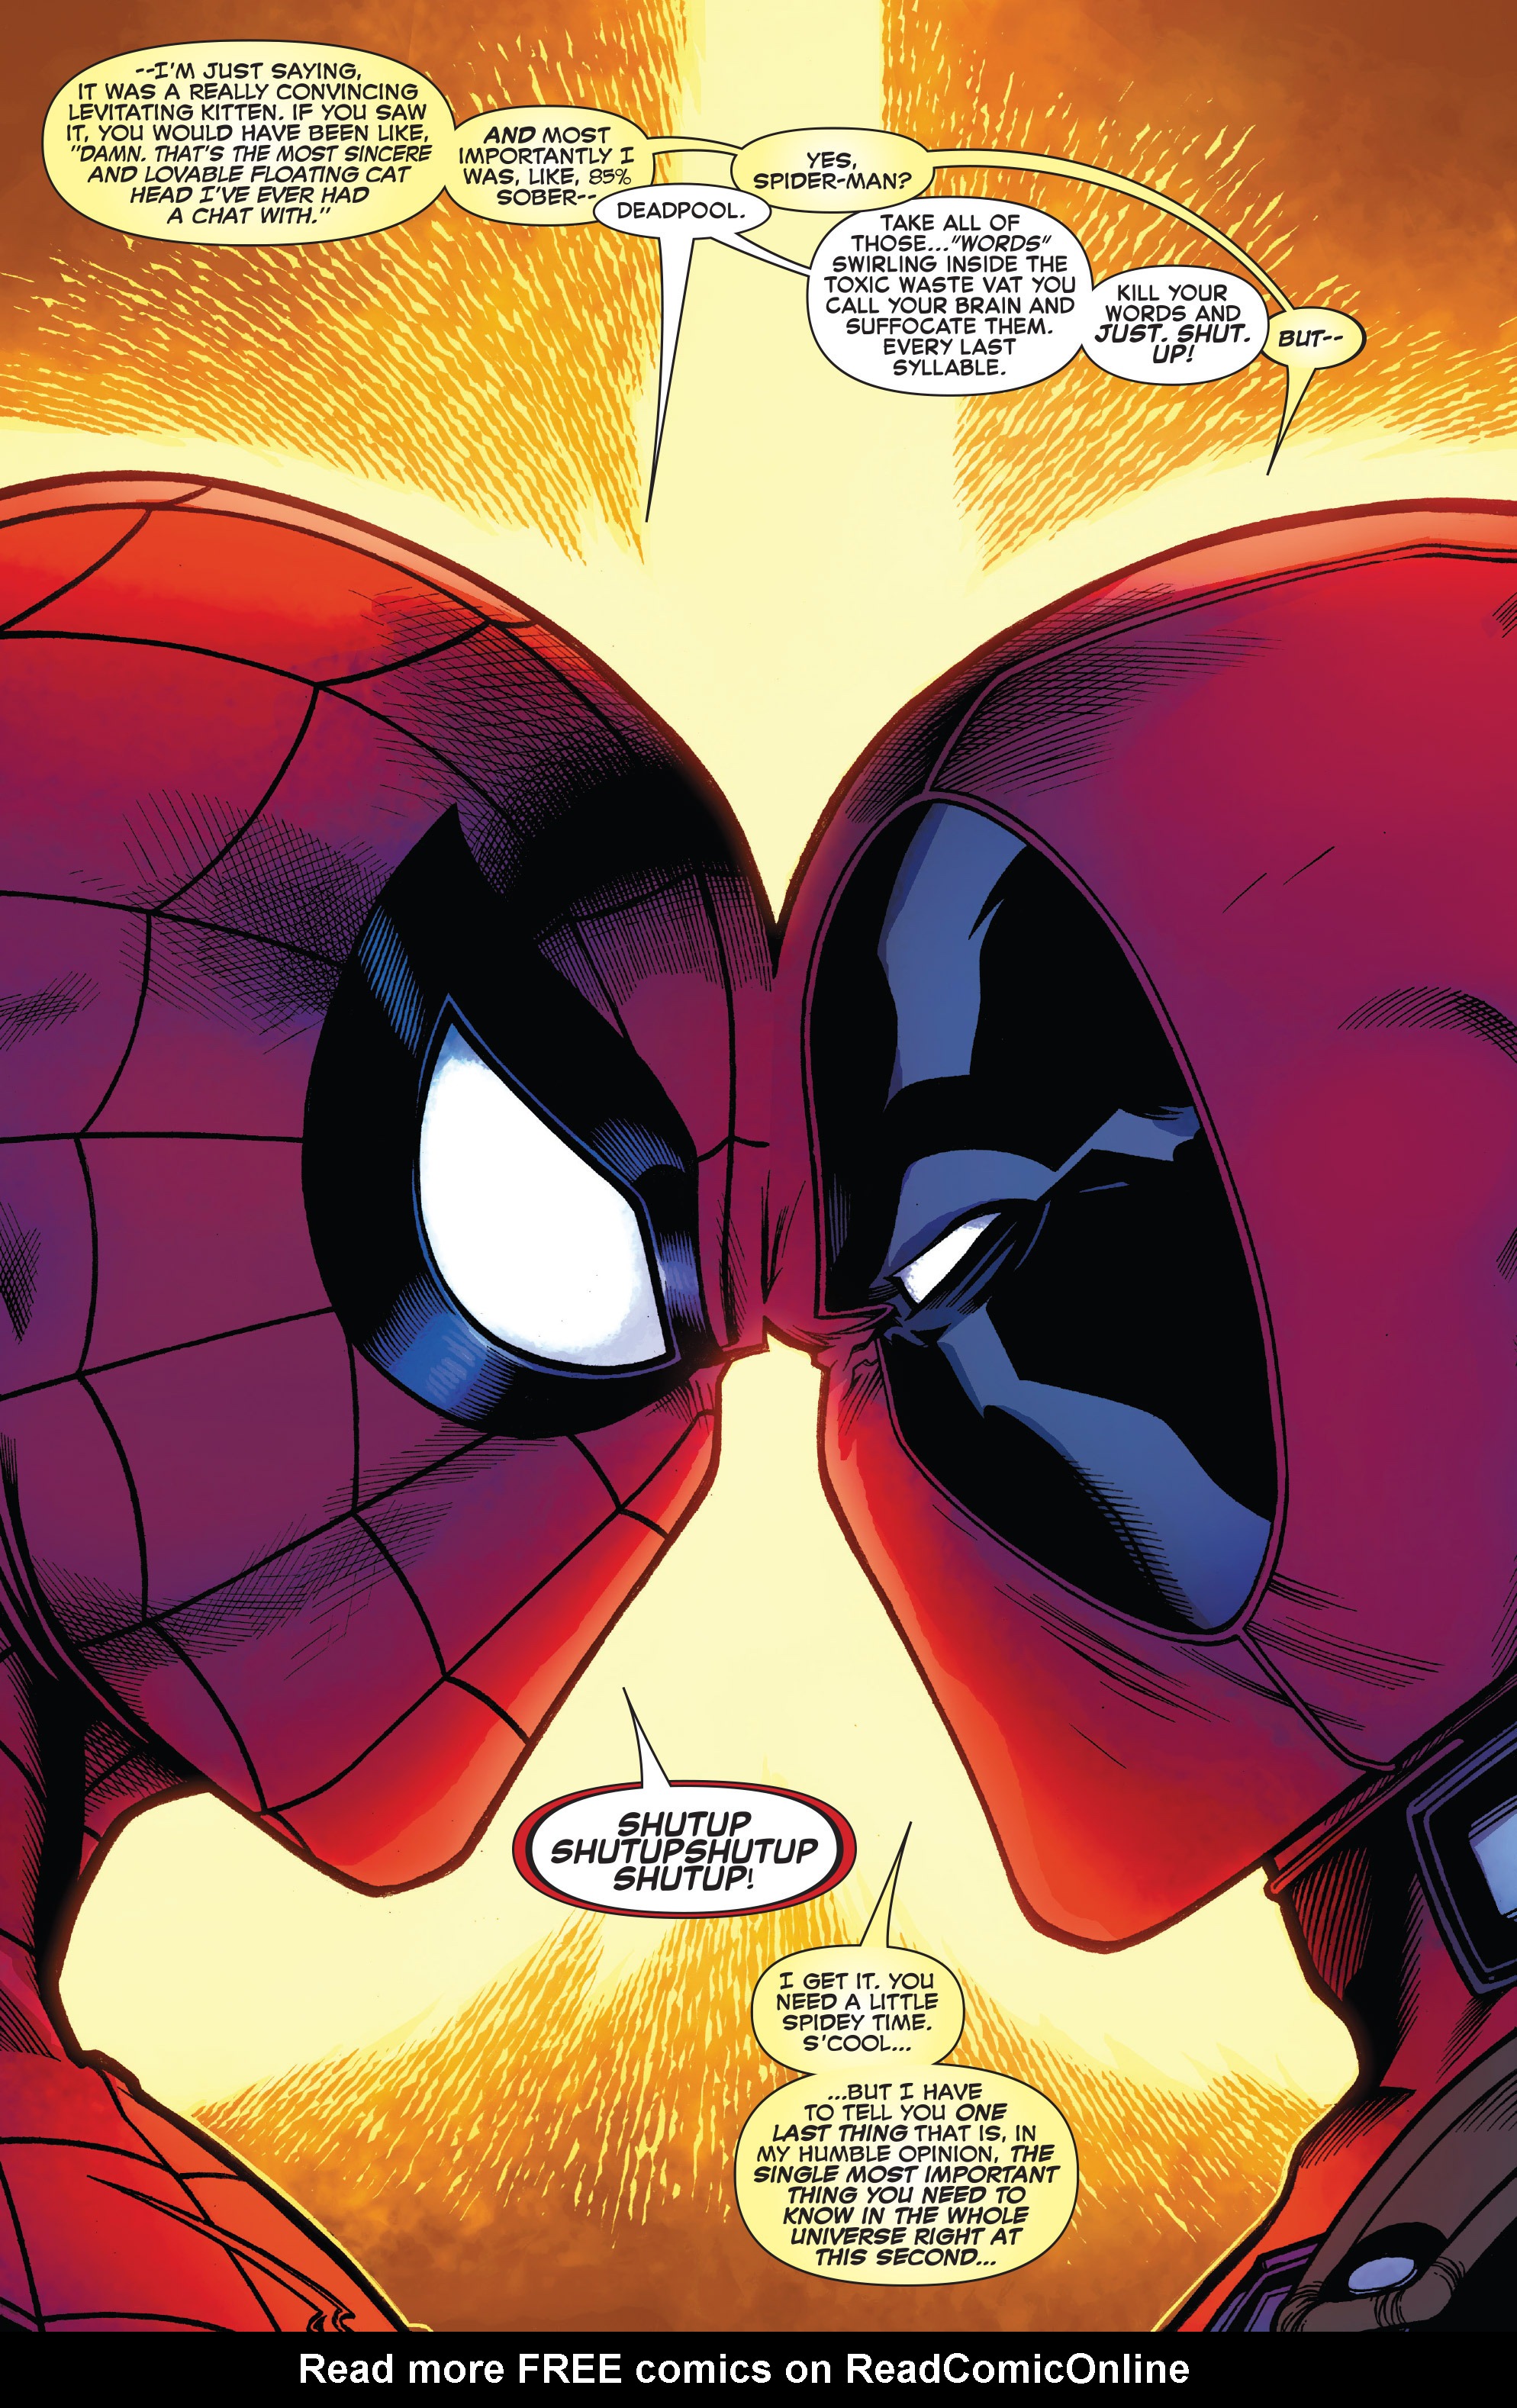 Marvel Comics #12-075960608254401211 Vol 1 Spider-Man / Deadpool 